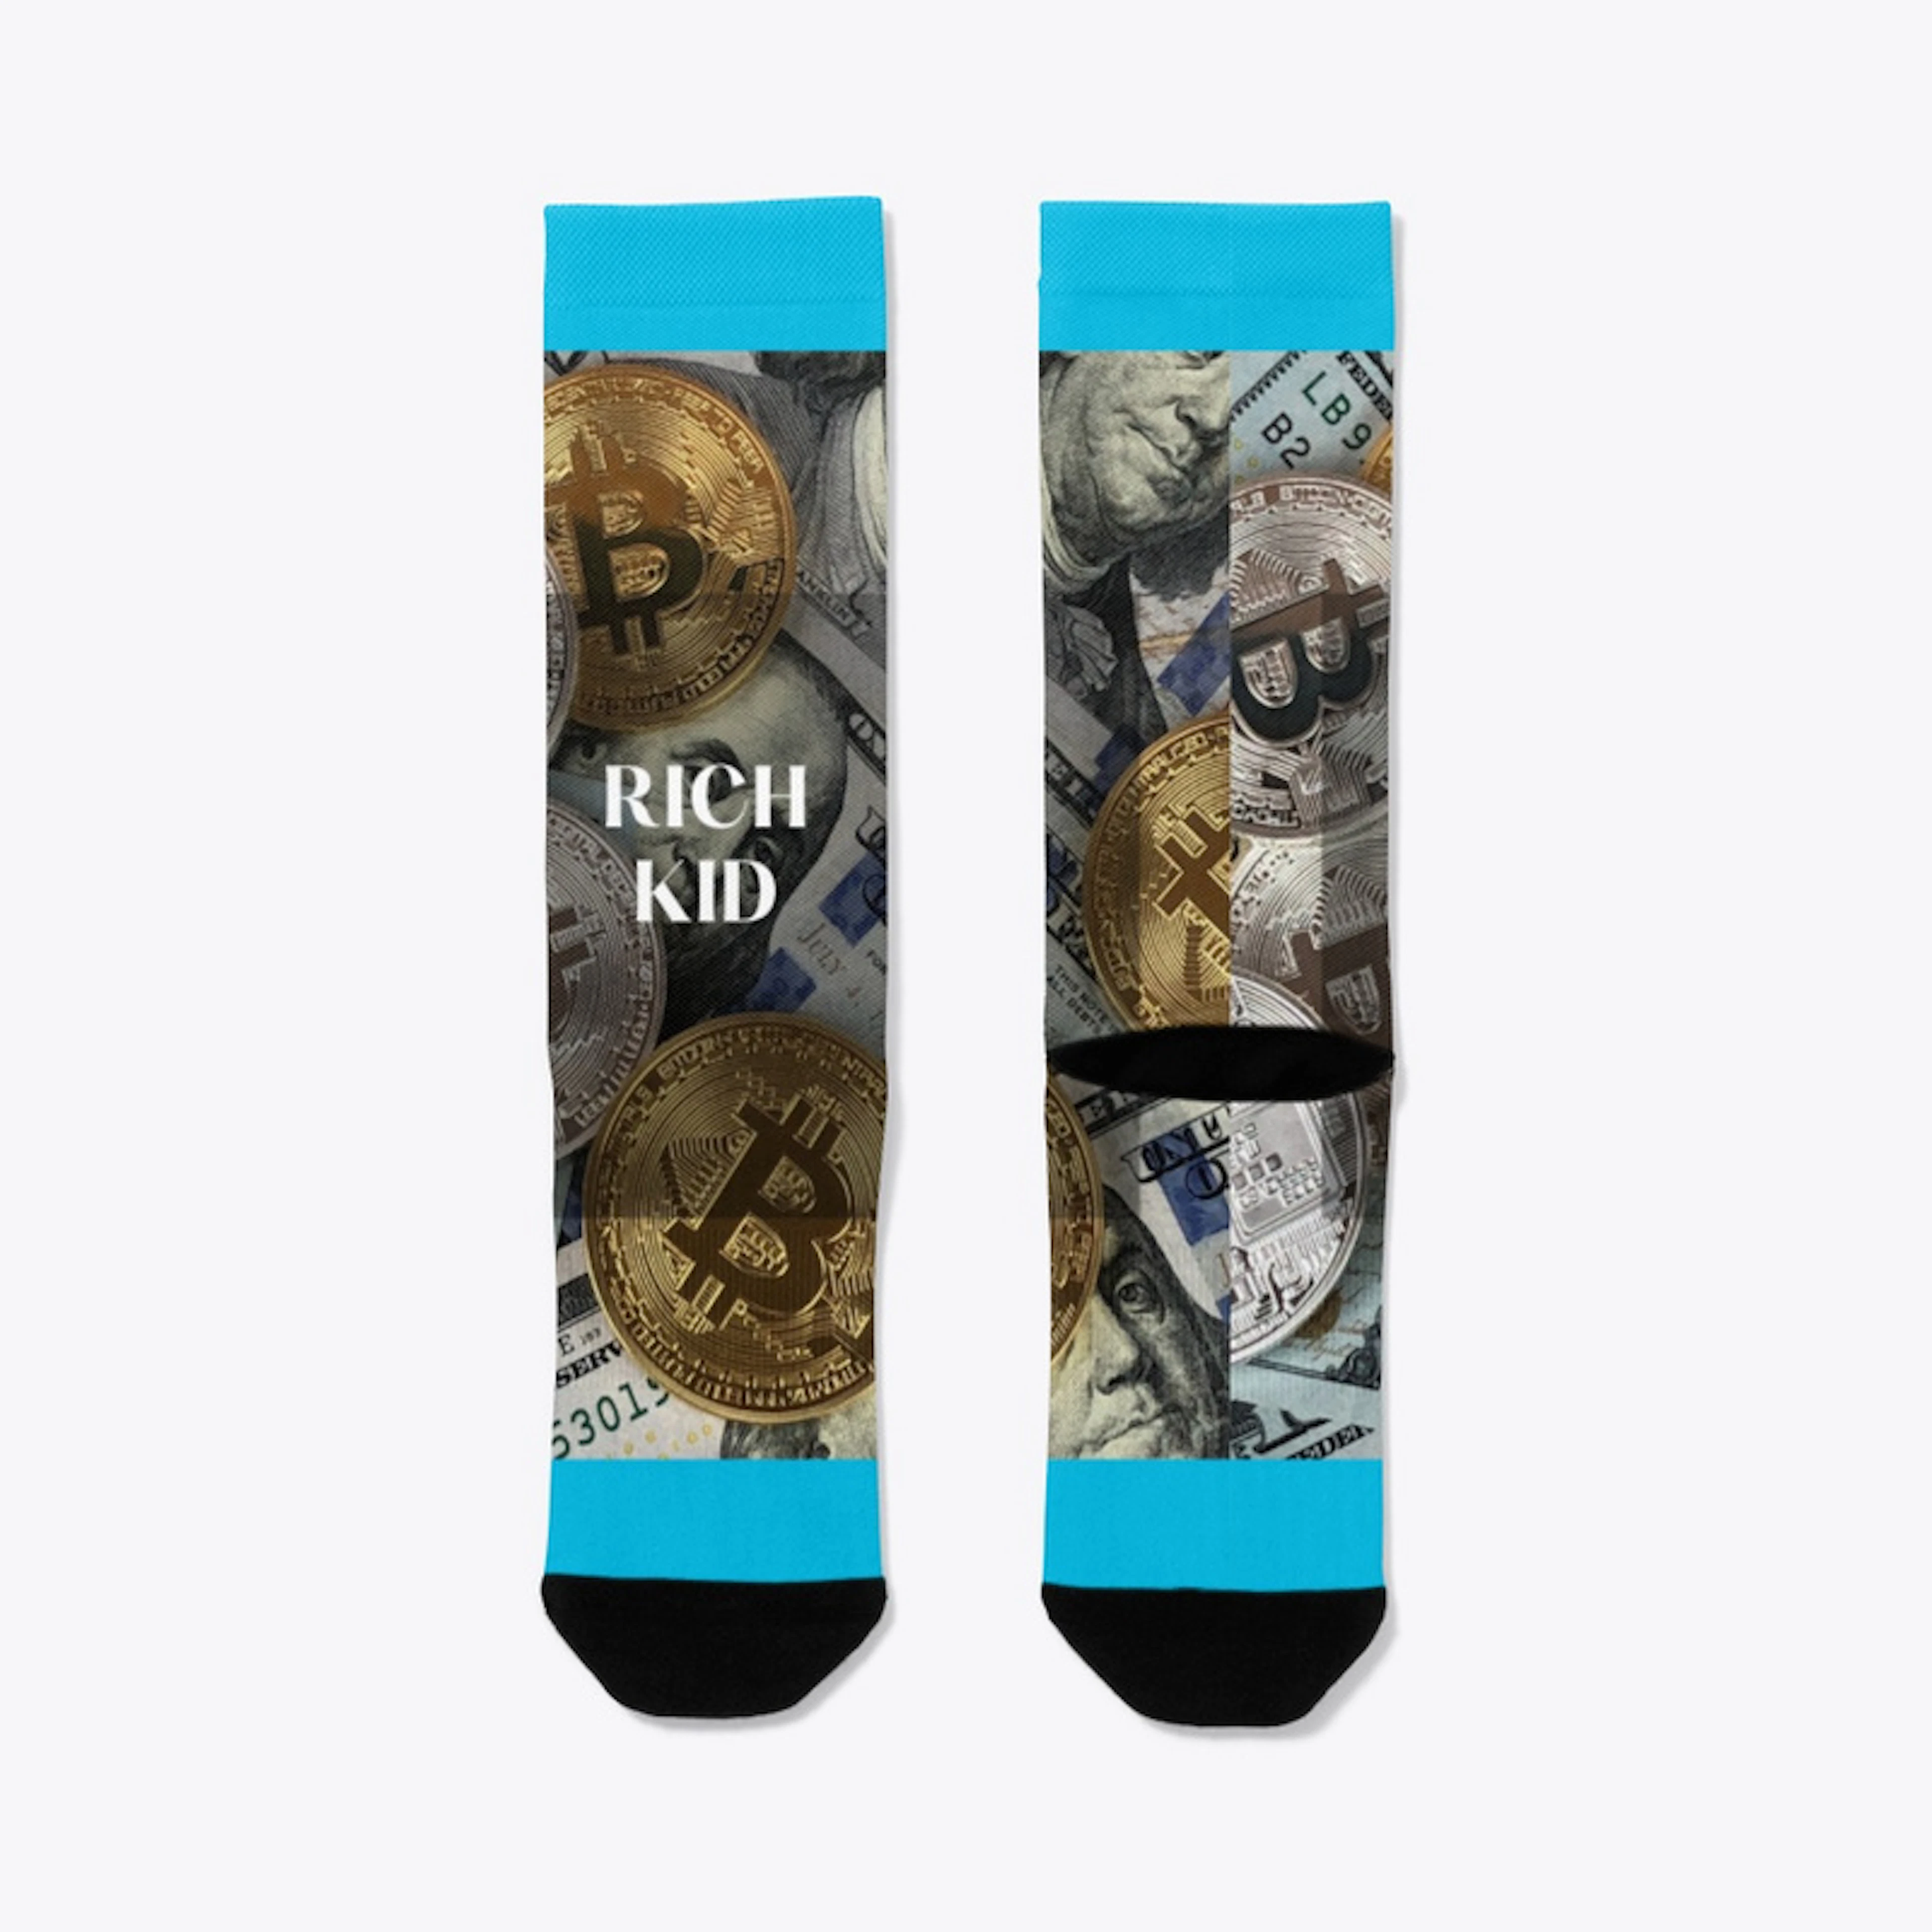 Rich kid socks